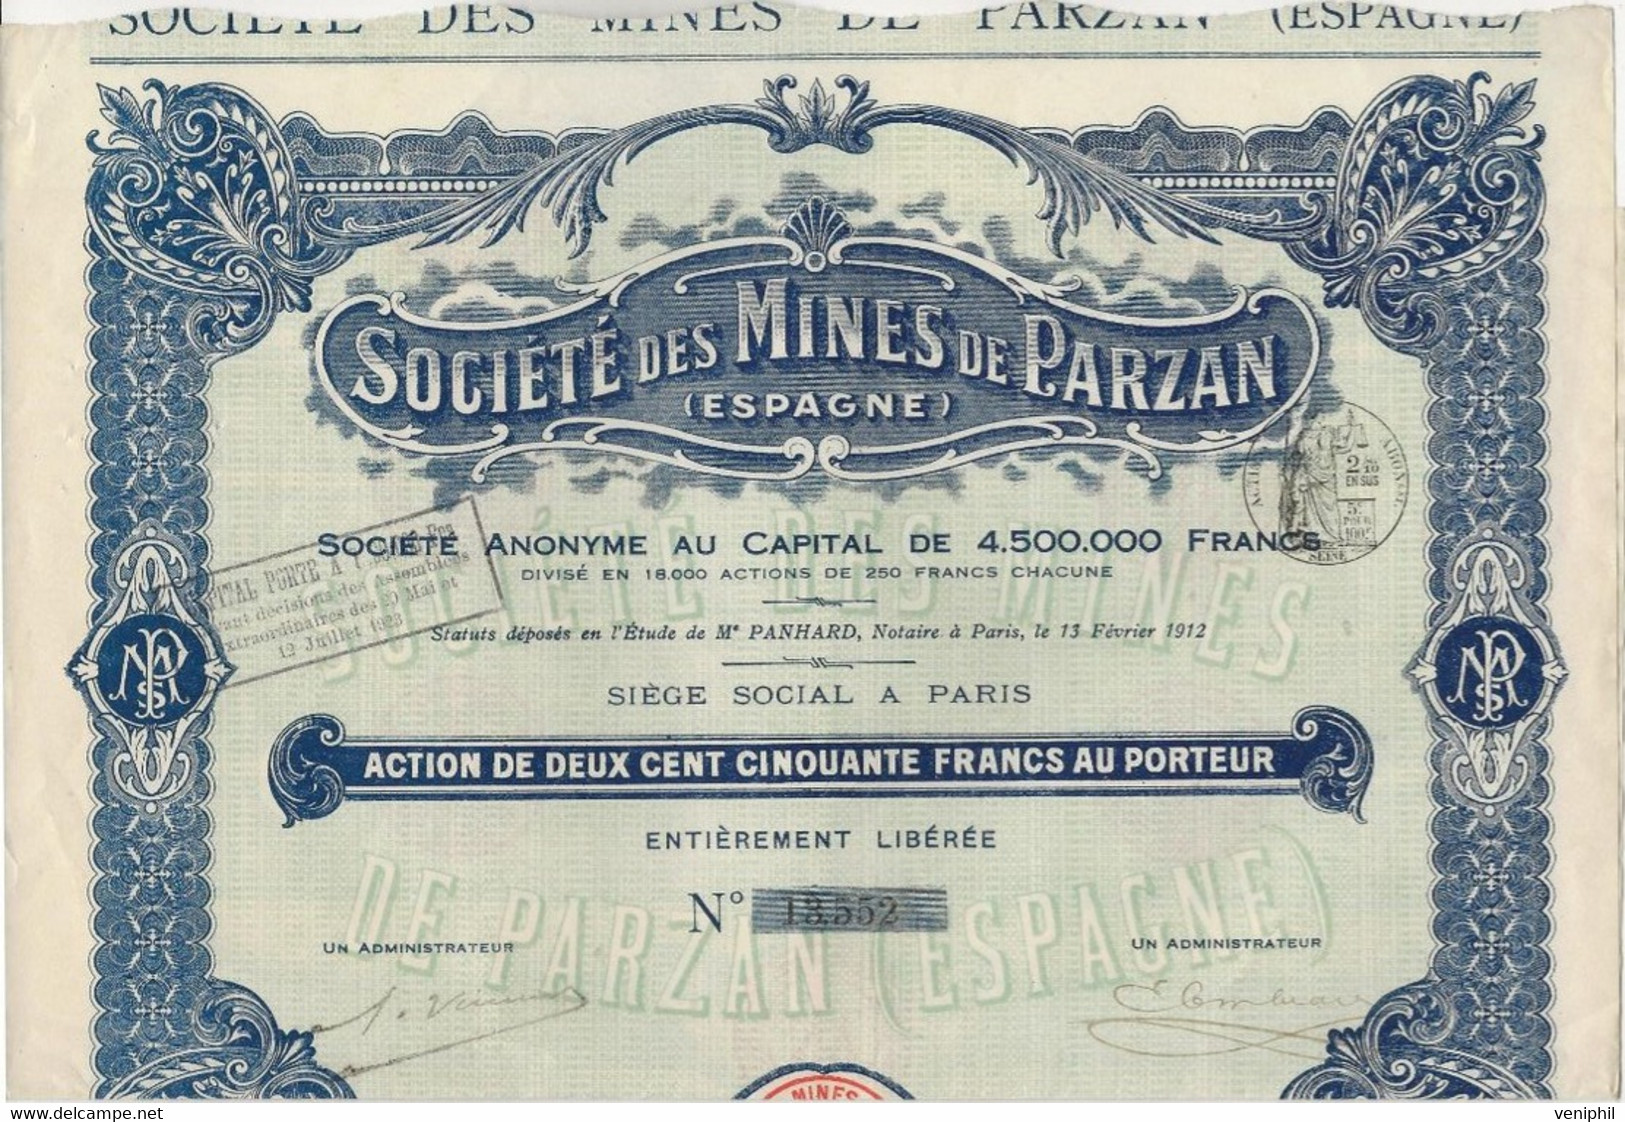 SOCIETE DE MINES DE PARZAN - ESPAGNE - ACTION DE 250 FRANCS  -1912 - Mines